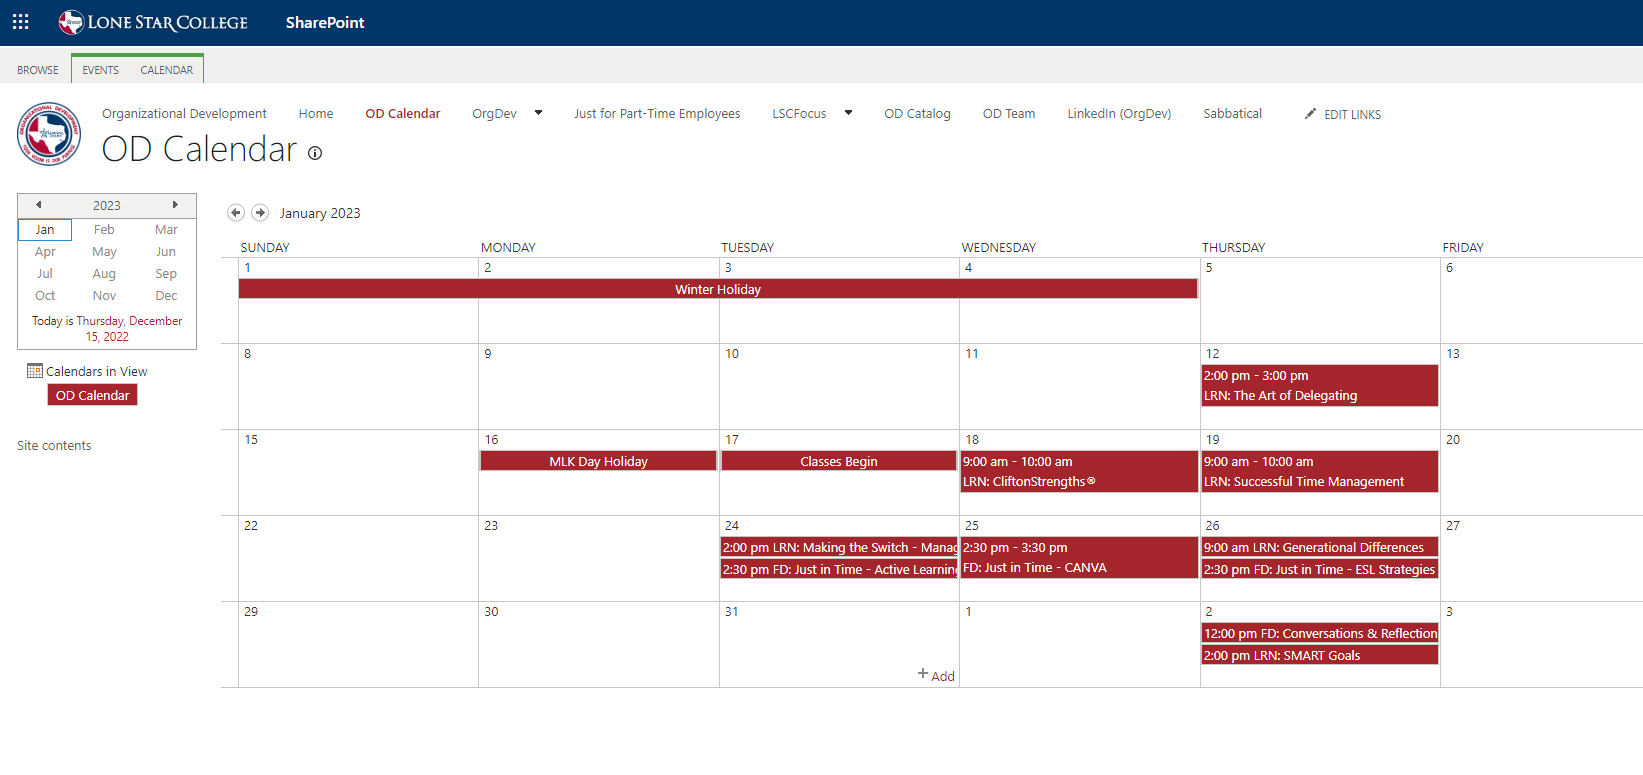 Organizational Development Calendar